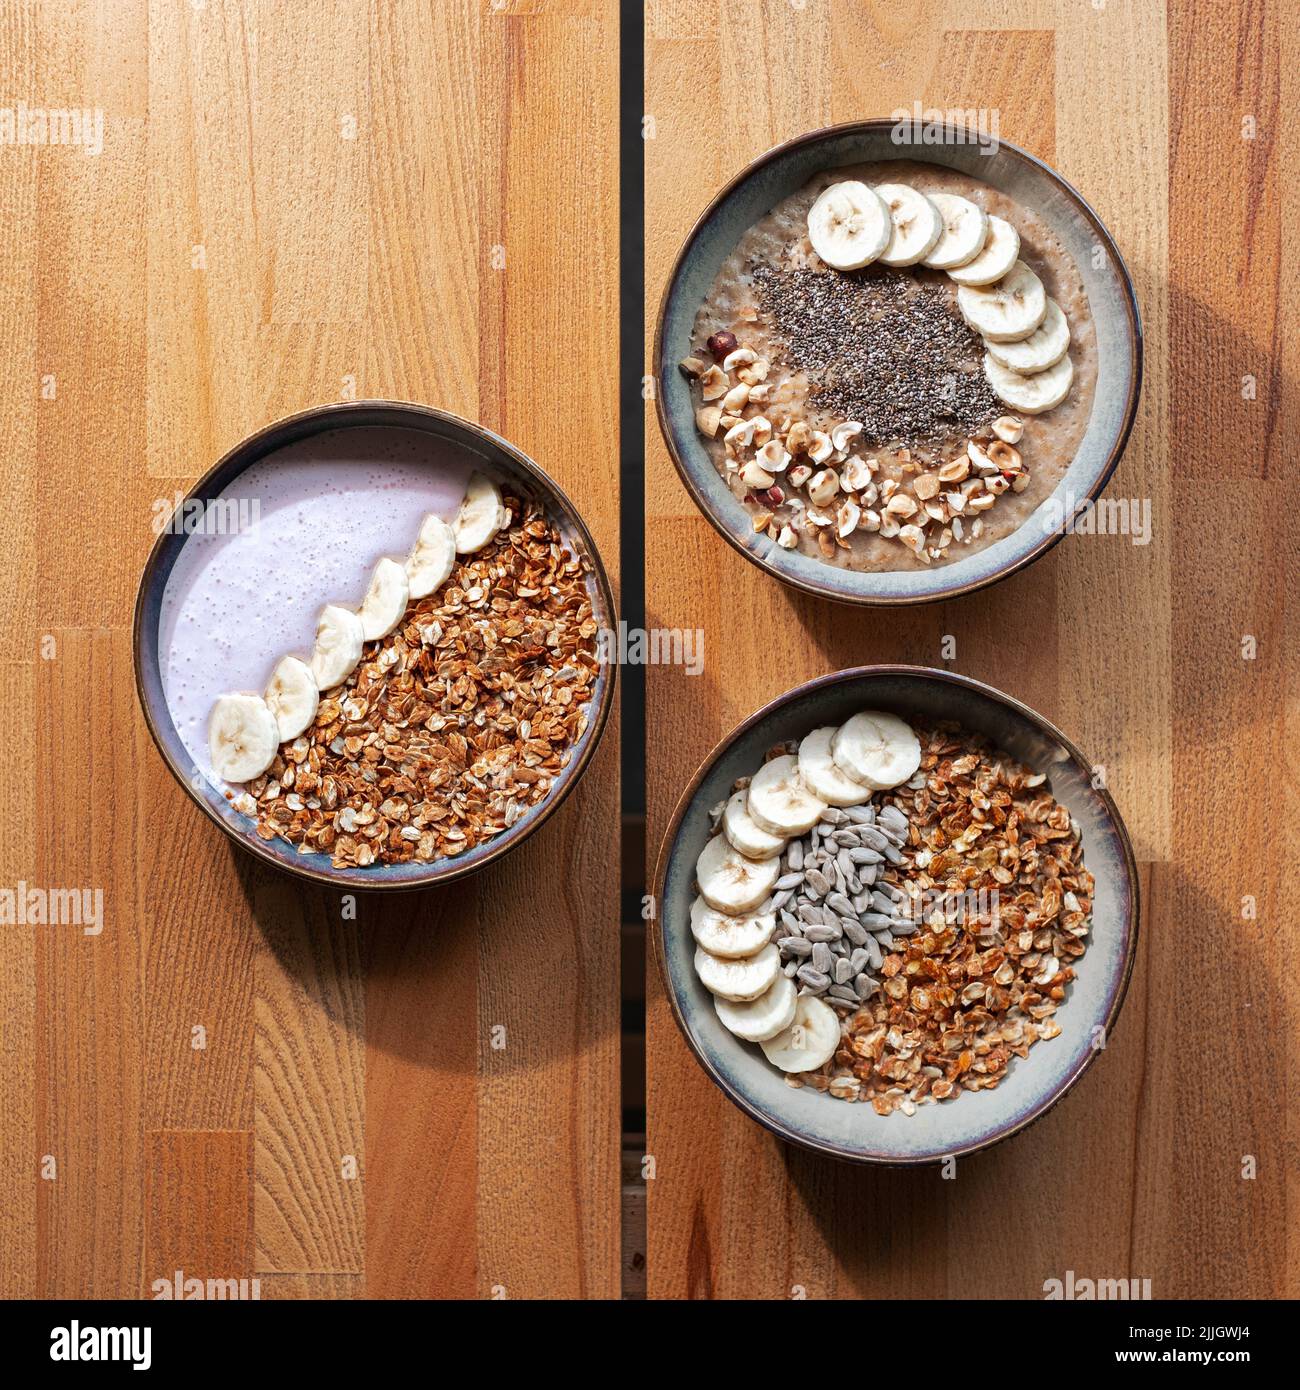 Von oben aus hat man einen Blick auf die Müslischalen - gesunde Frühstücksoptionen Stockfoto